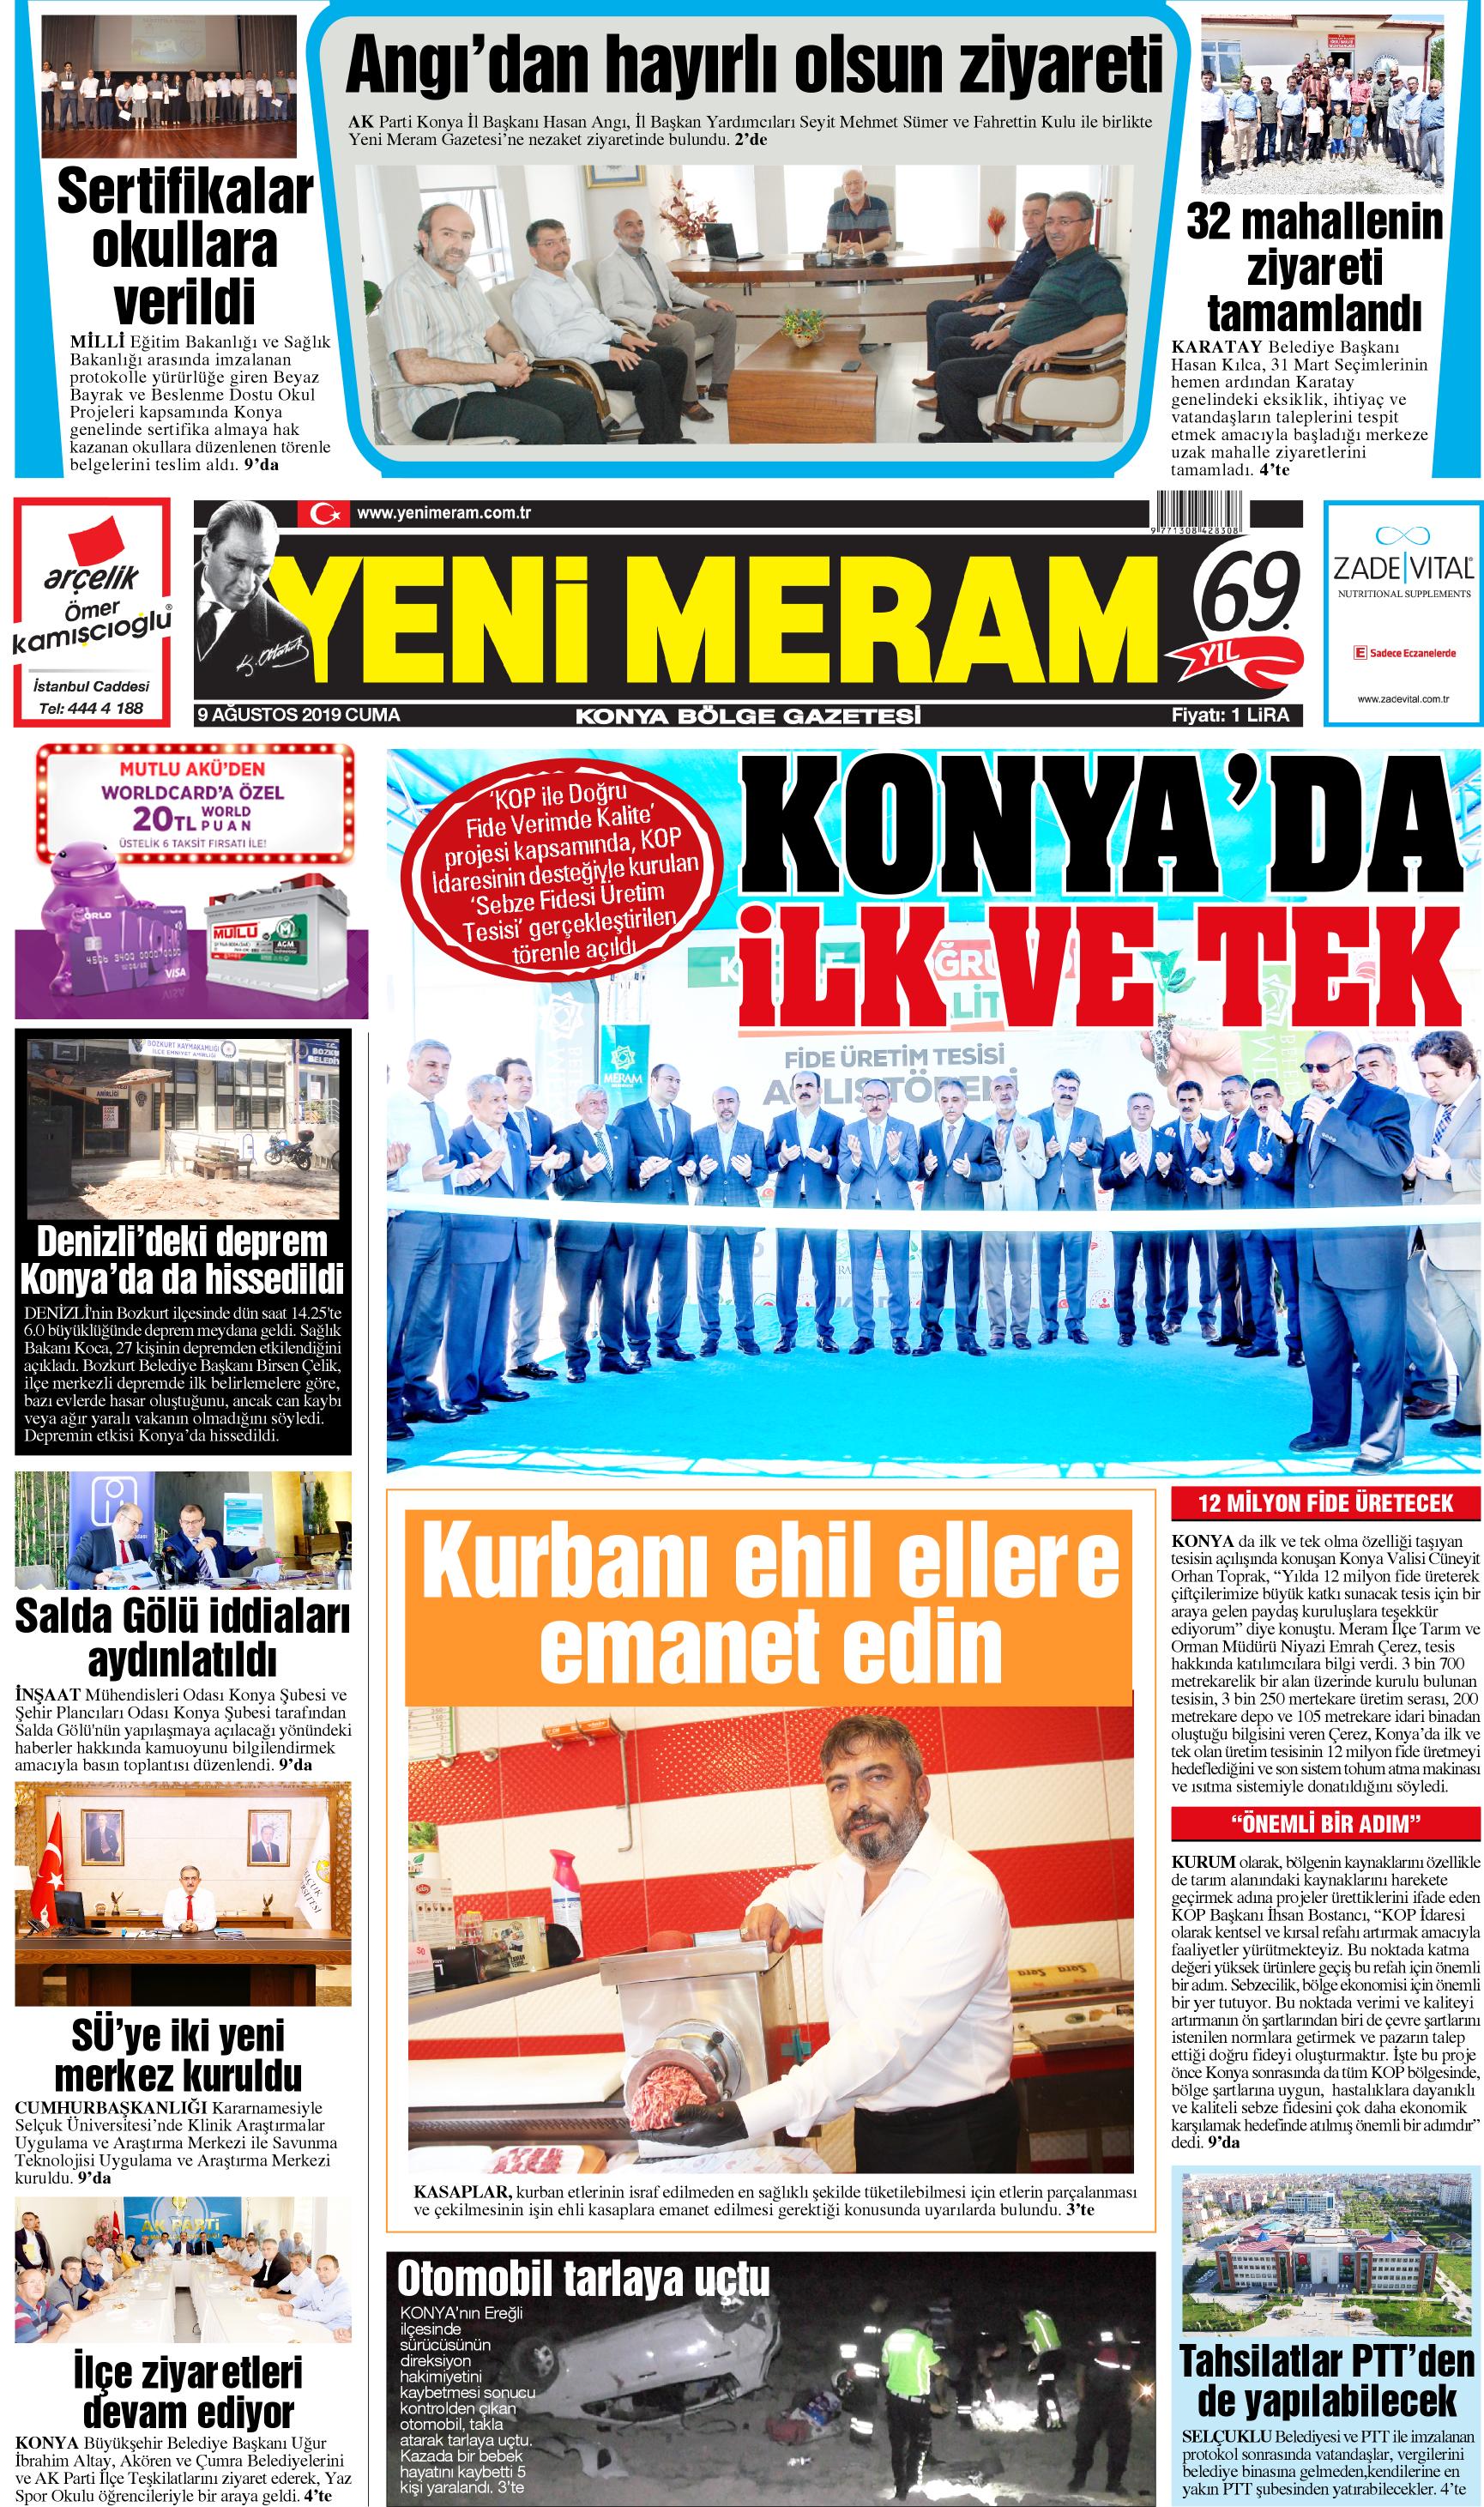 9 Ağustos 2019 Yeni Meram Gazetesi